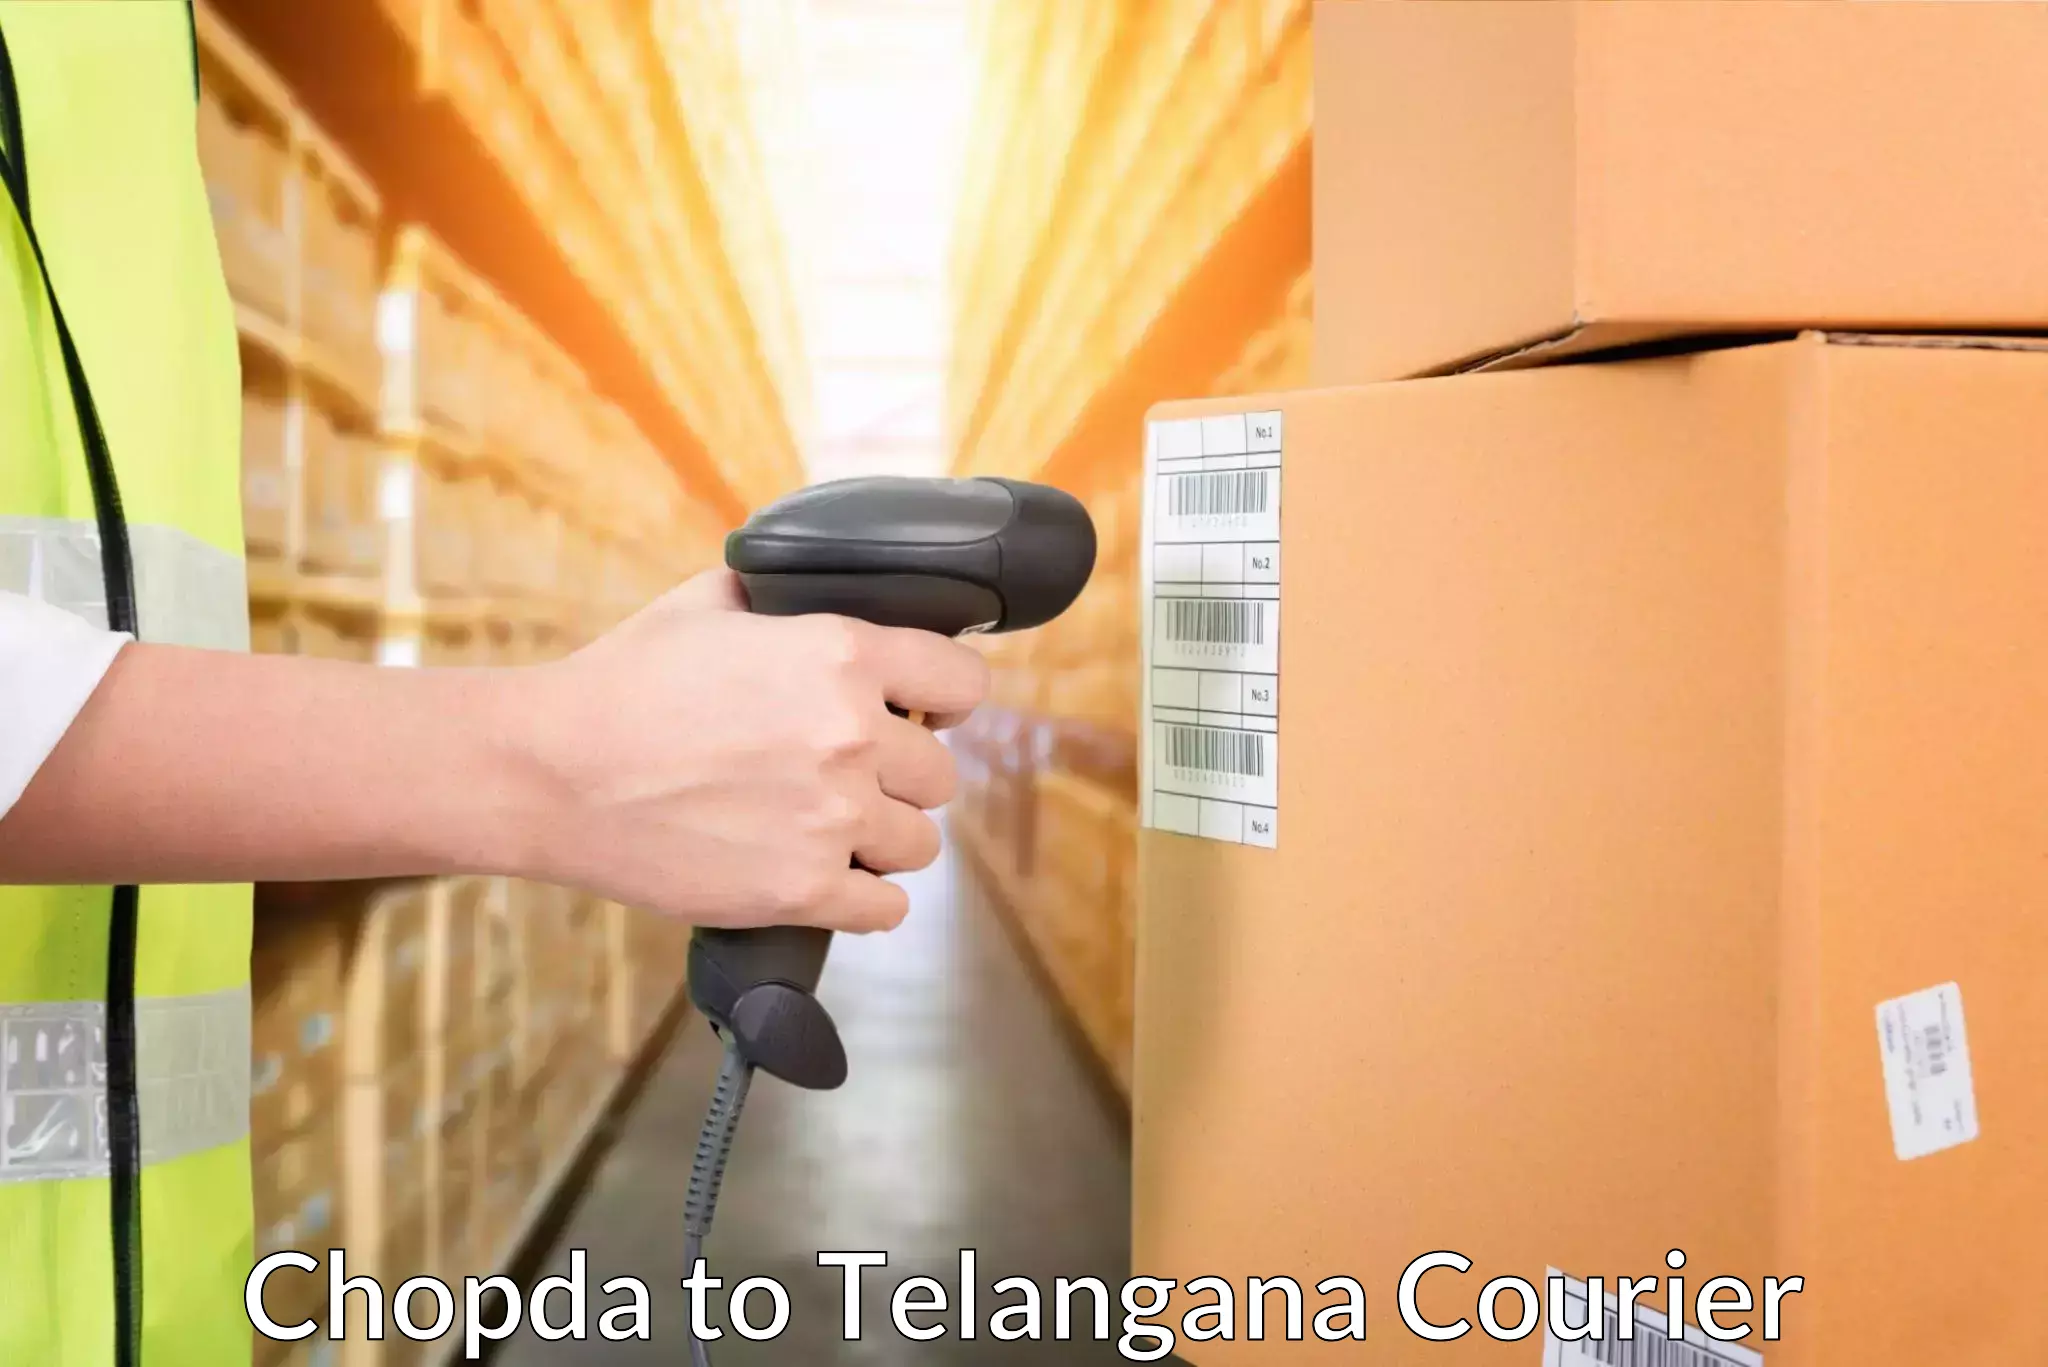 Door-to-door freight service Chopda to Telangana